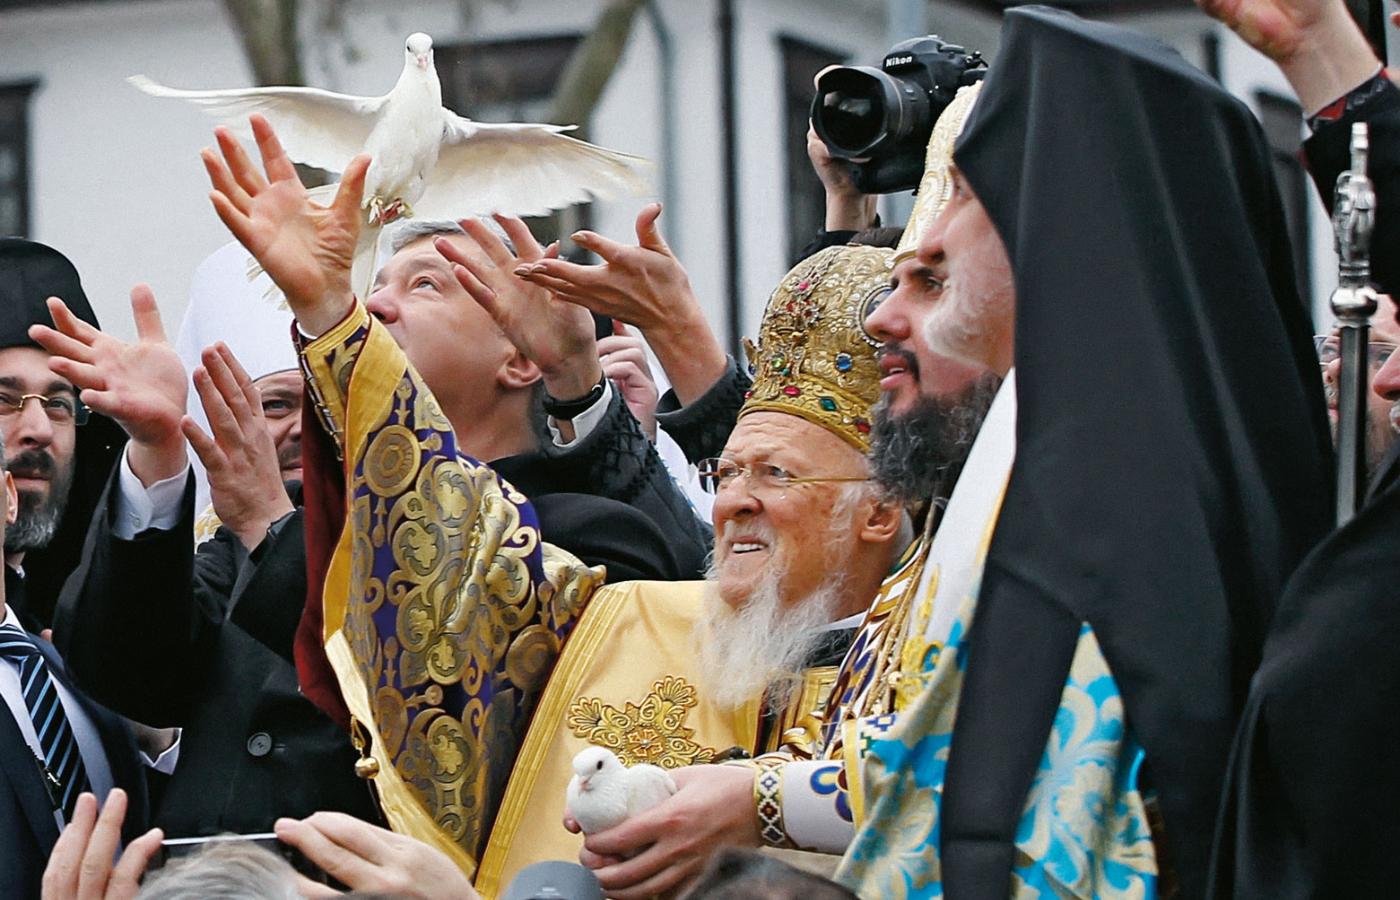 Patriarcha Konstantynopola Bartłomiej (w centrum) z prezydentem Ukrainy Petrem Poroszenką i Epifaniuszem, zwierzchnikiem niezależnego ukraińskiego Kościoła prawosławnego, wypuszczają gołębie podczas symbolicznej ceremonii w Stambule uświęcającej niezależność Cerkwi ukraińskiej od Moskwy, 6 stycznia 2019 r.